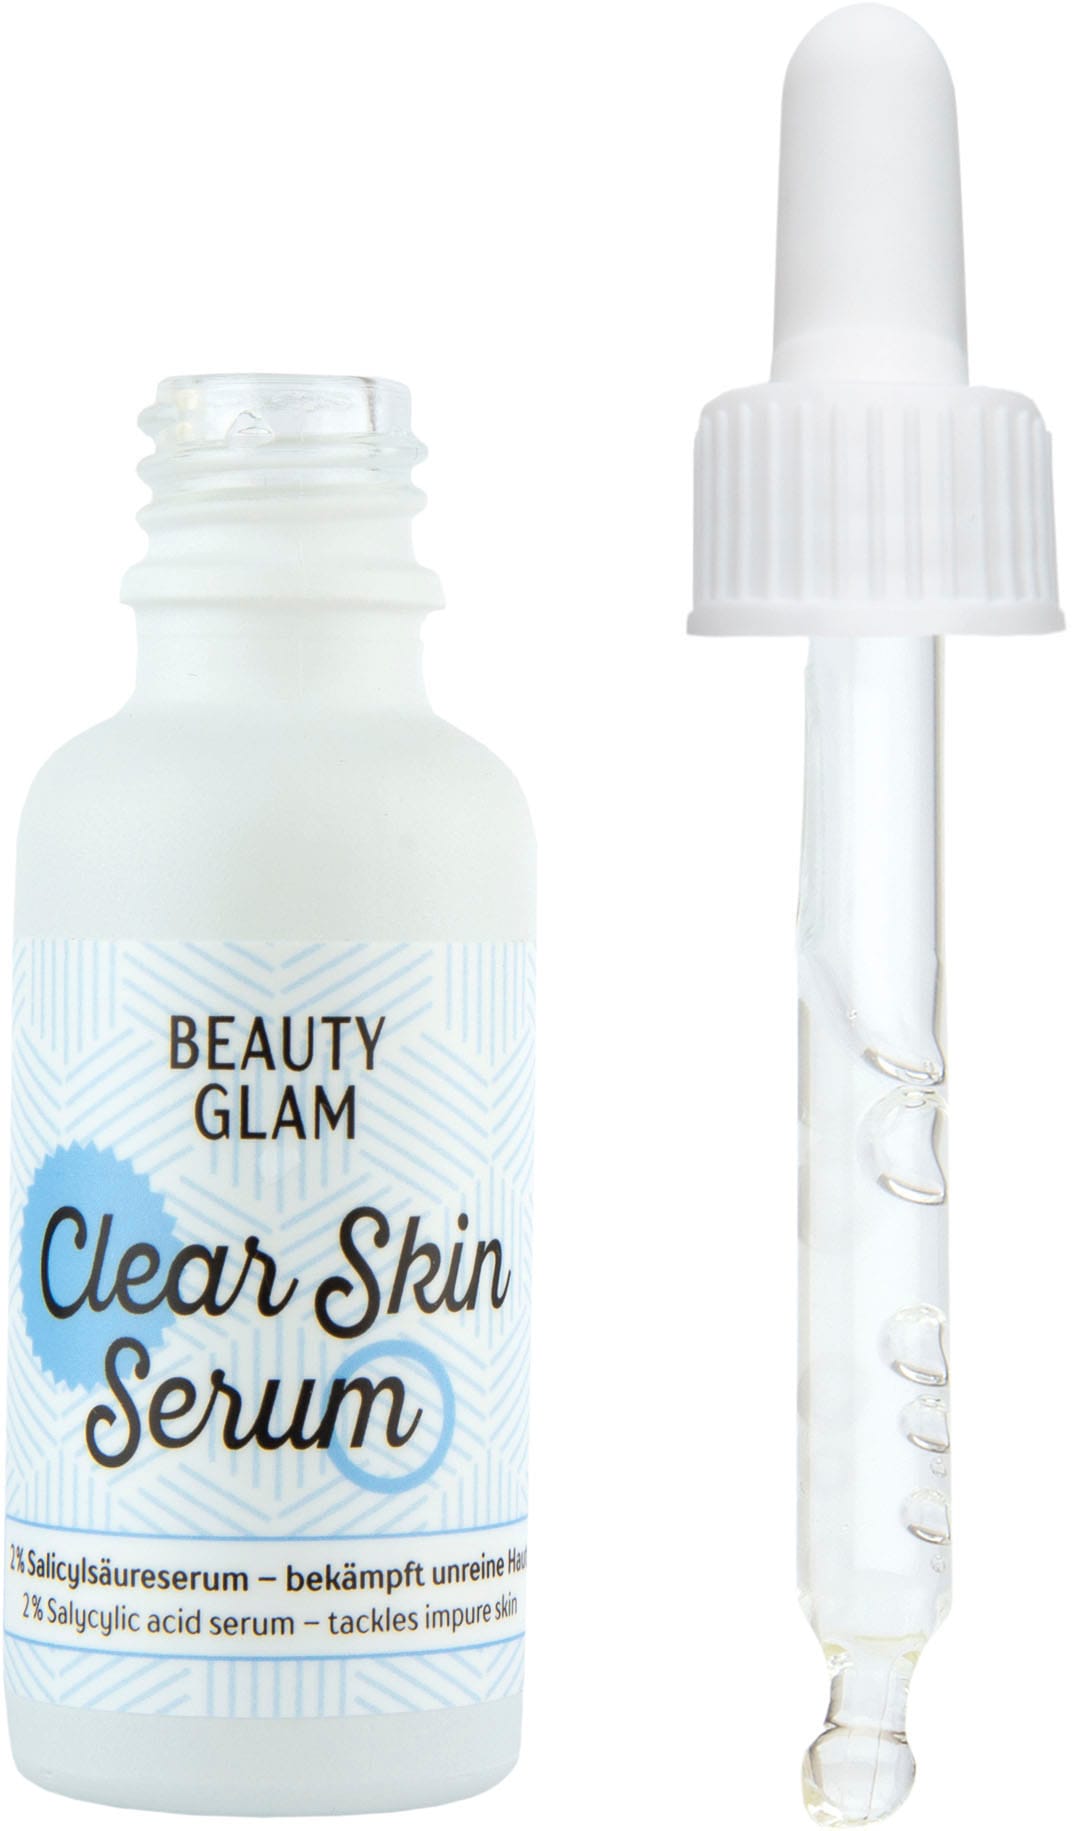 Serum« Gesichtsserum Shop GLAM BEAUTY Glam Clear Skin im Online kaufen OTTO »Beauty